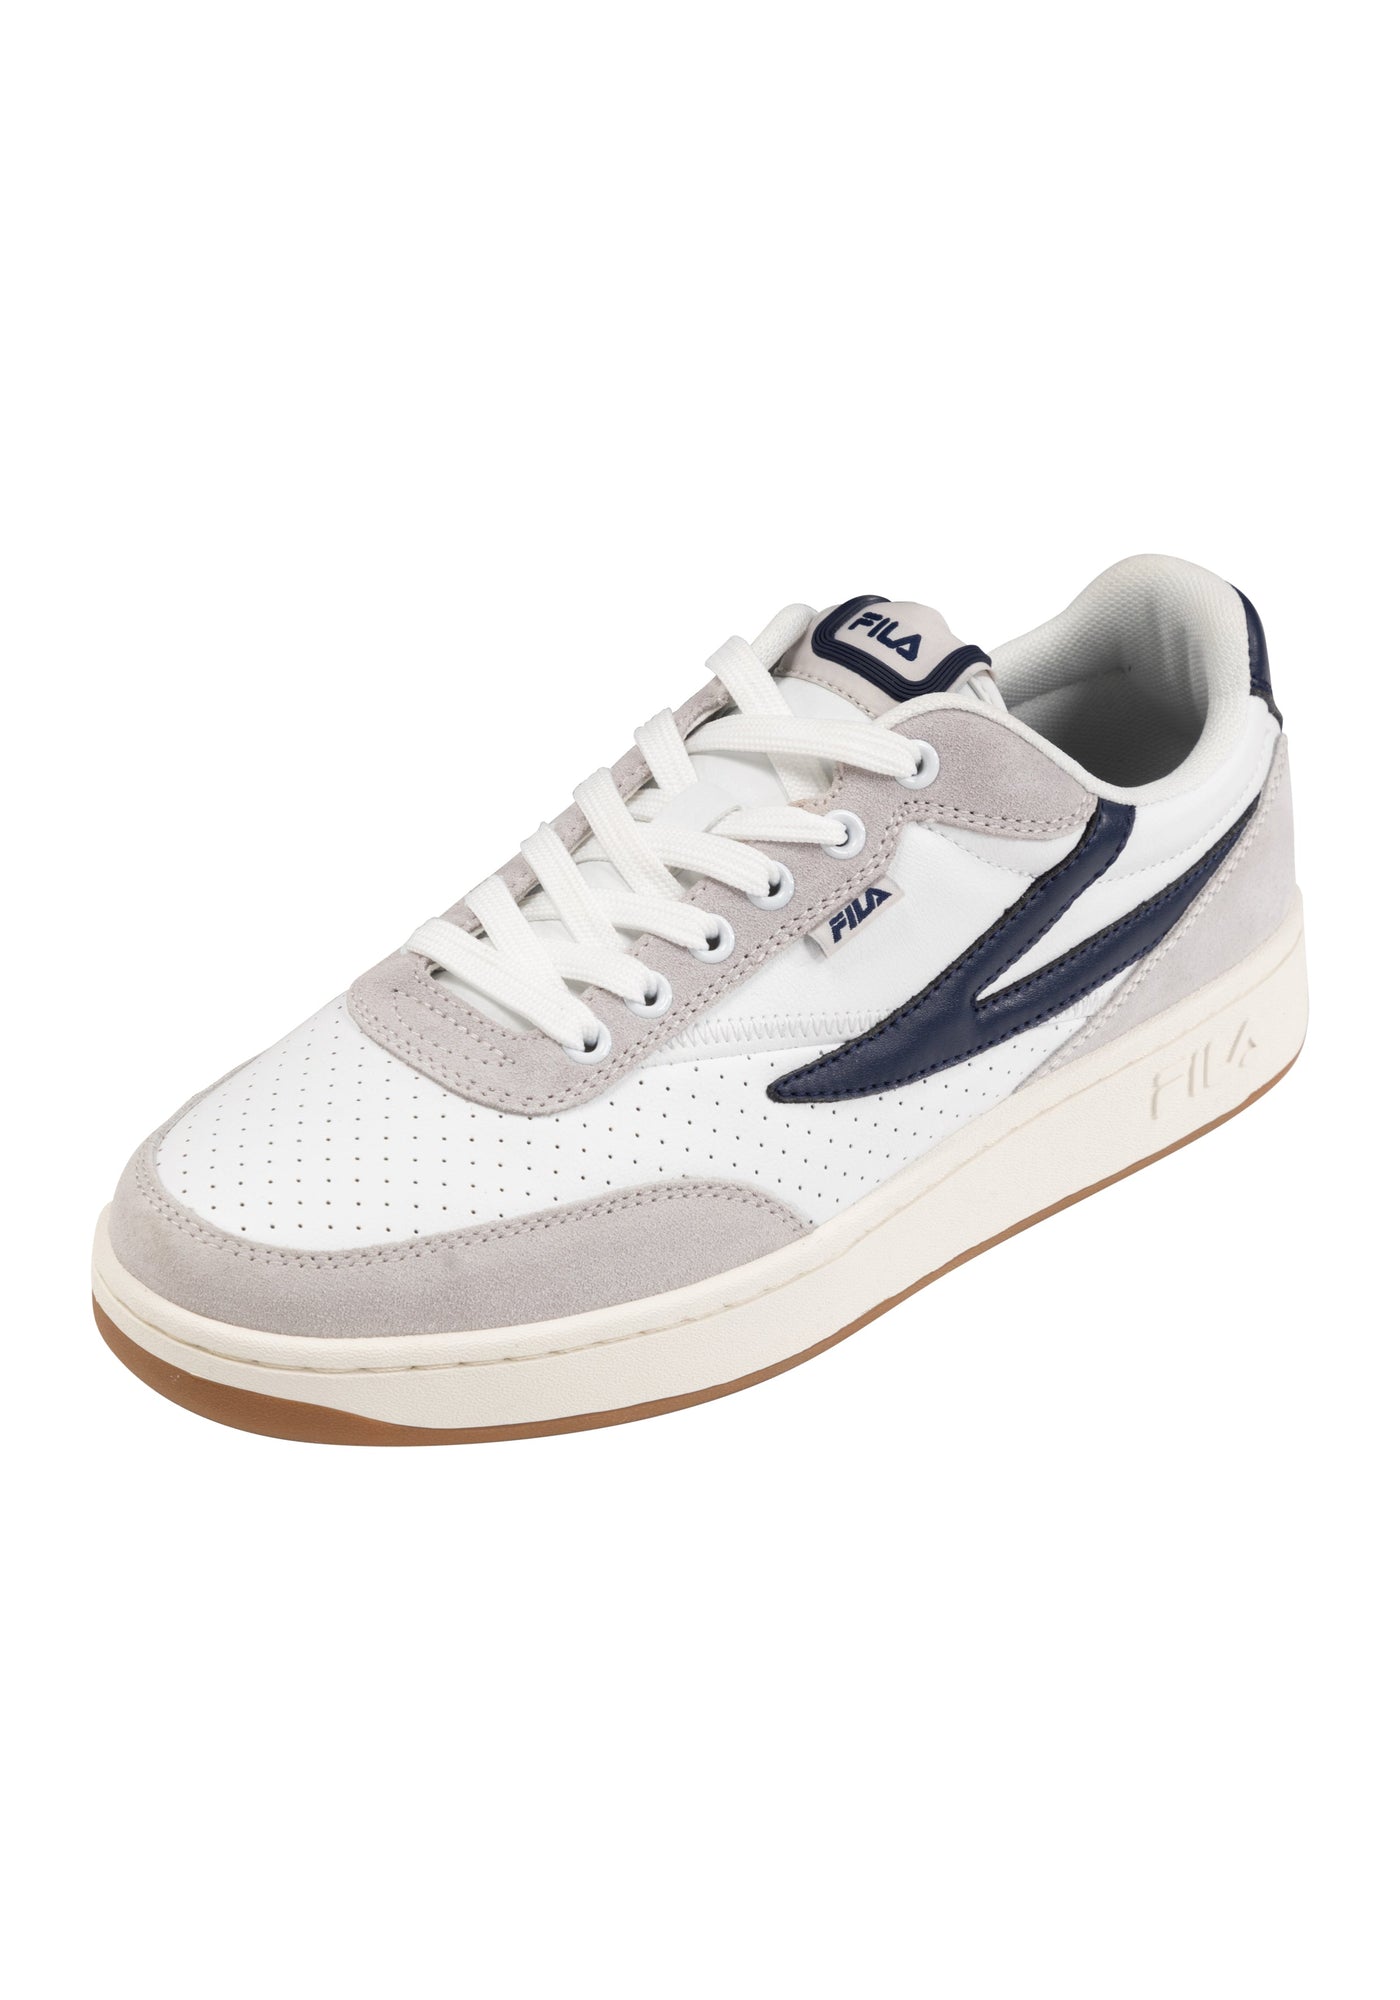 Sevaro S in White-Fila Navy Sneakers Fila   